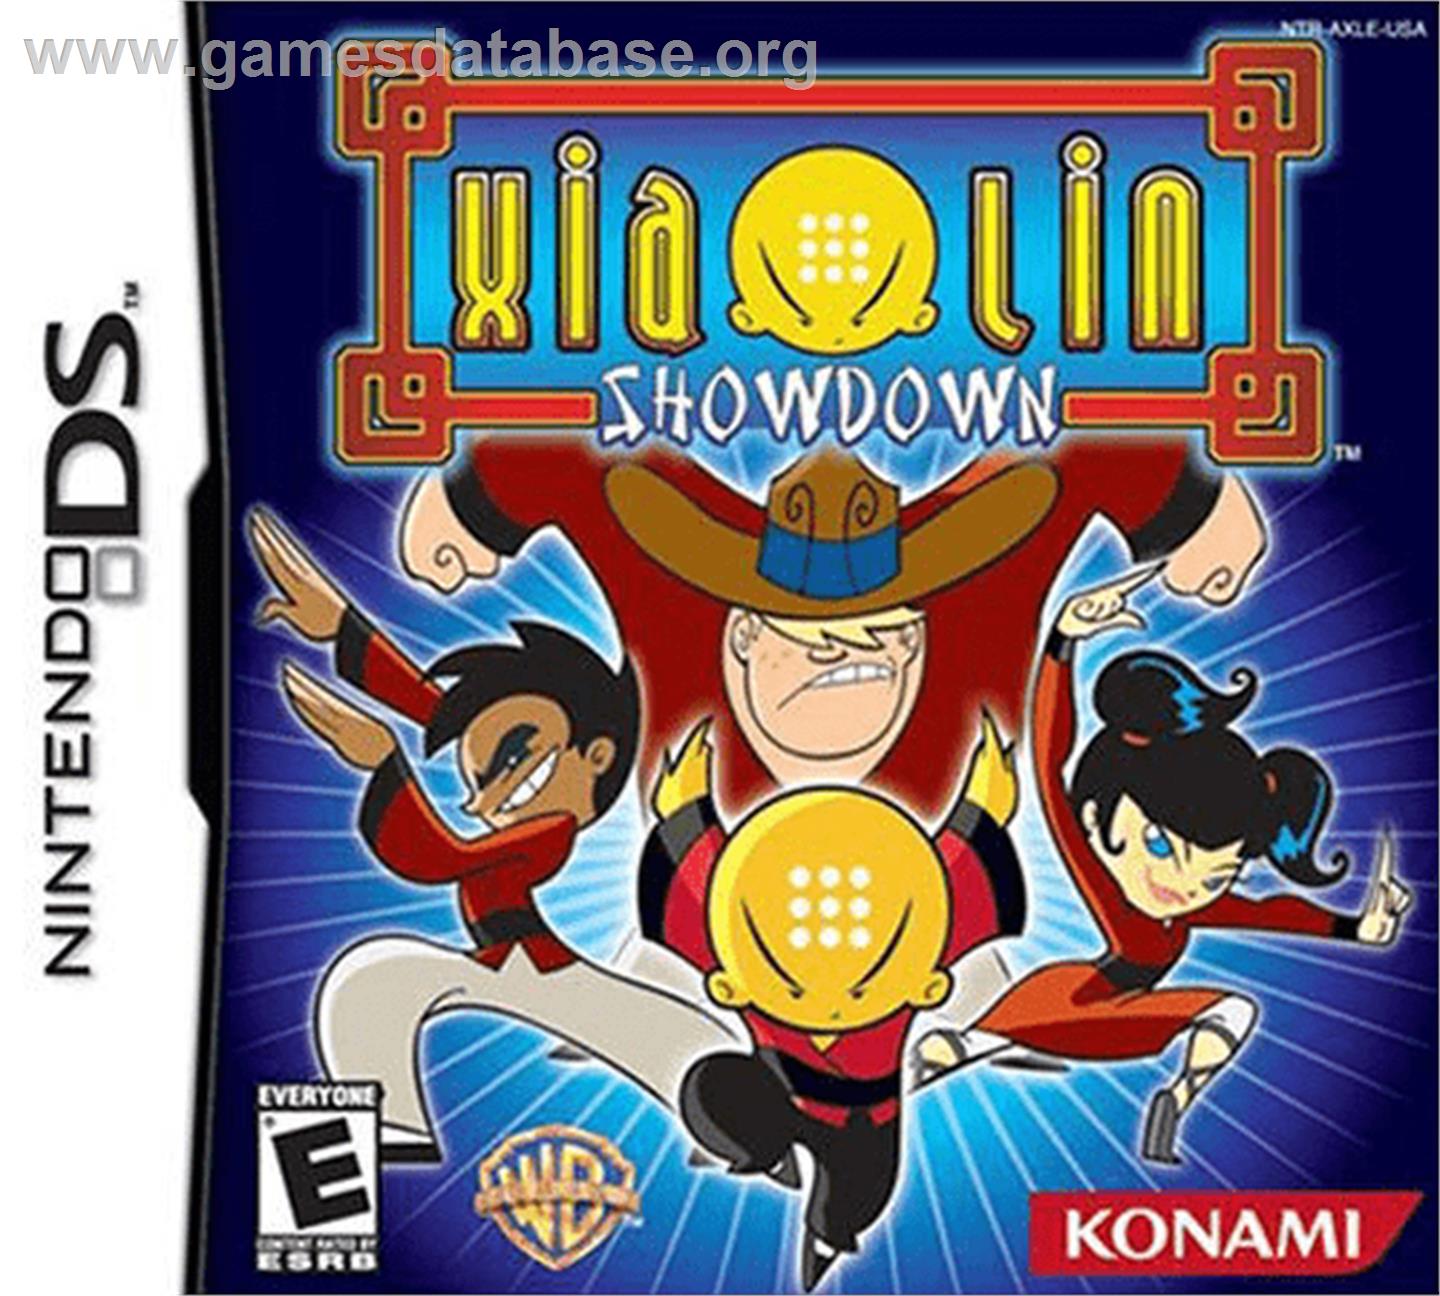 Xiaolin Showdown - Nintendo DS - Artwork - Box